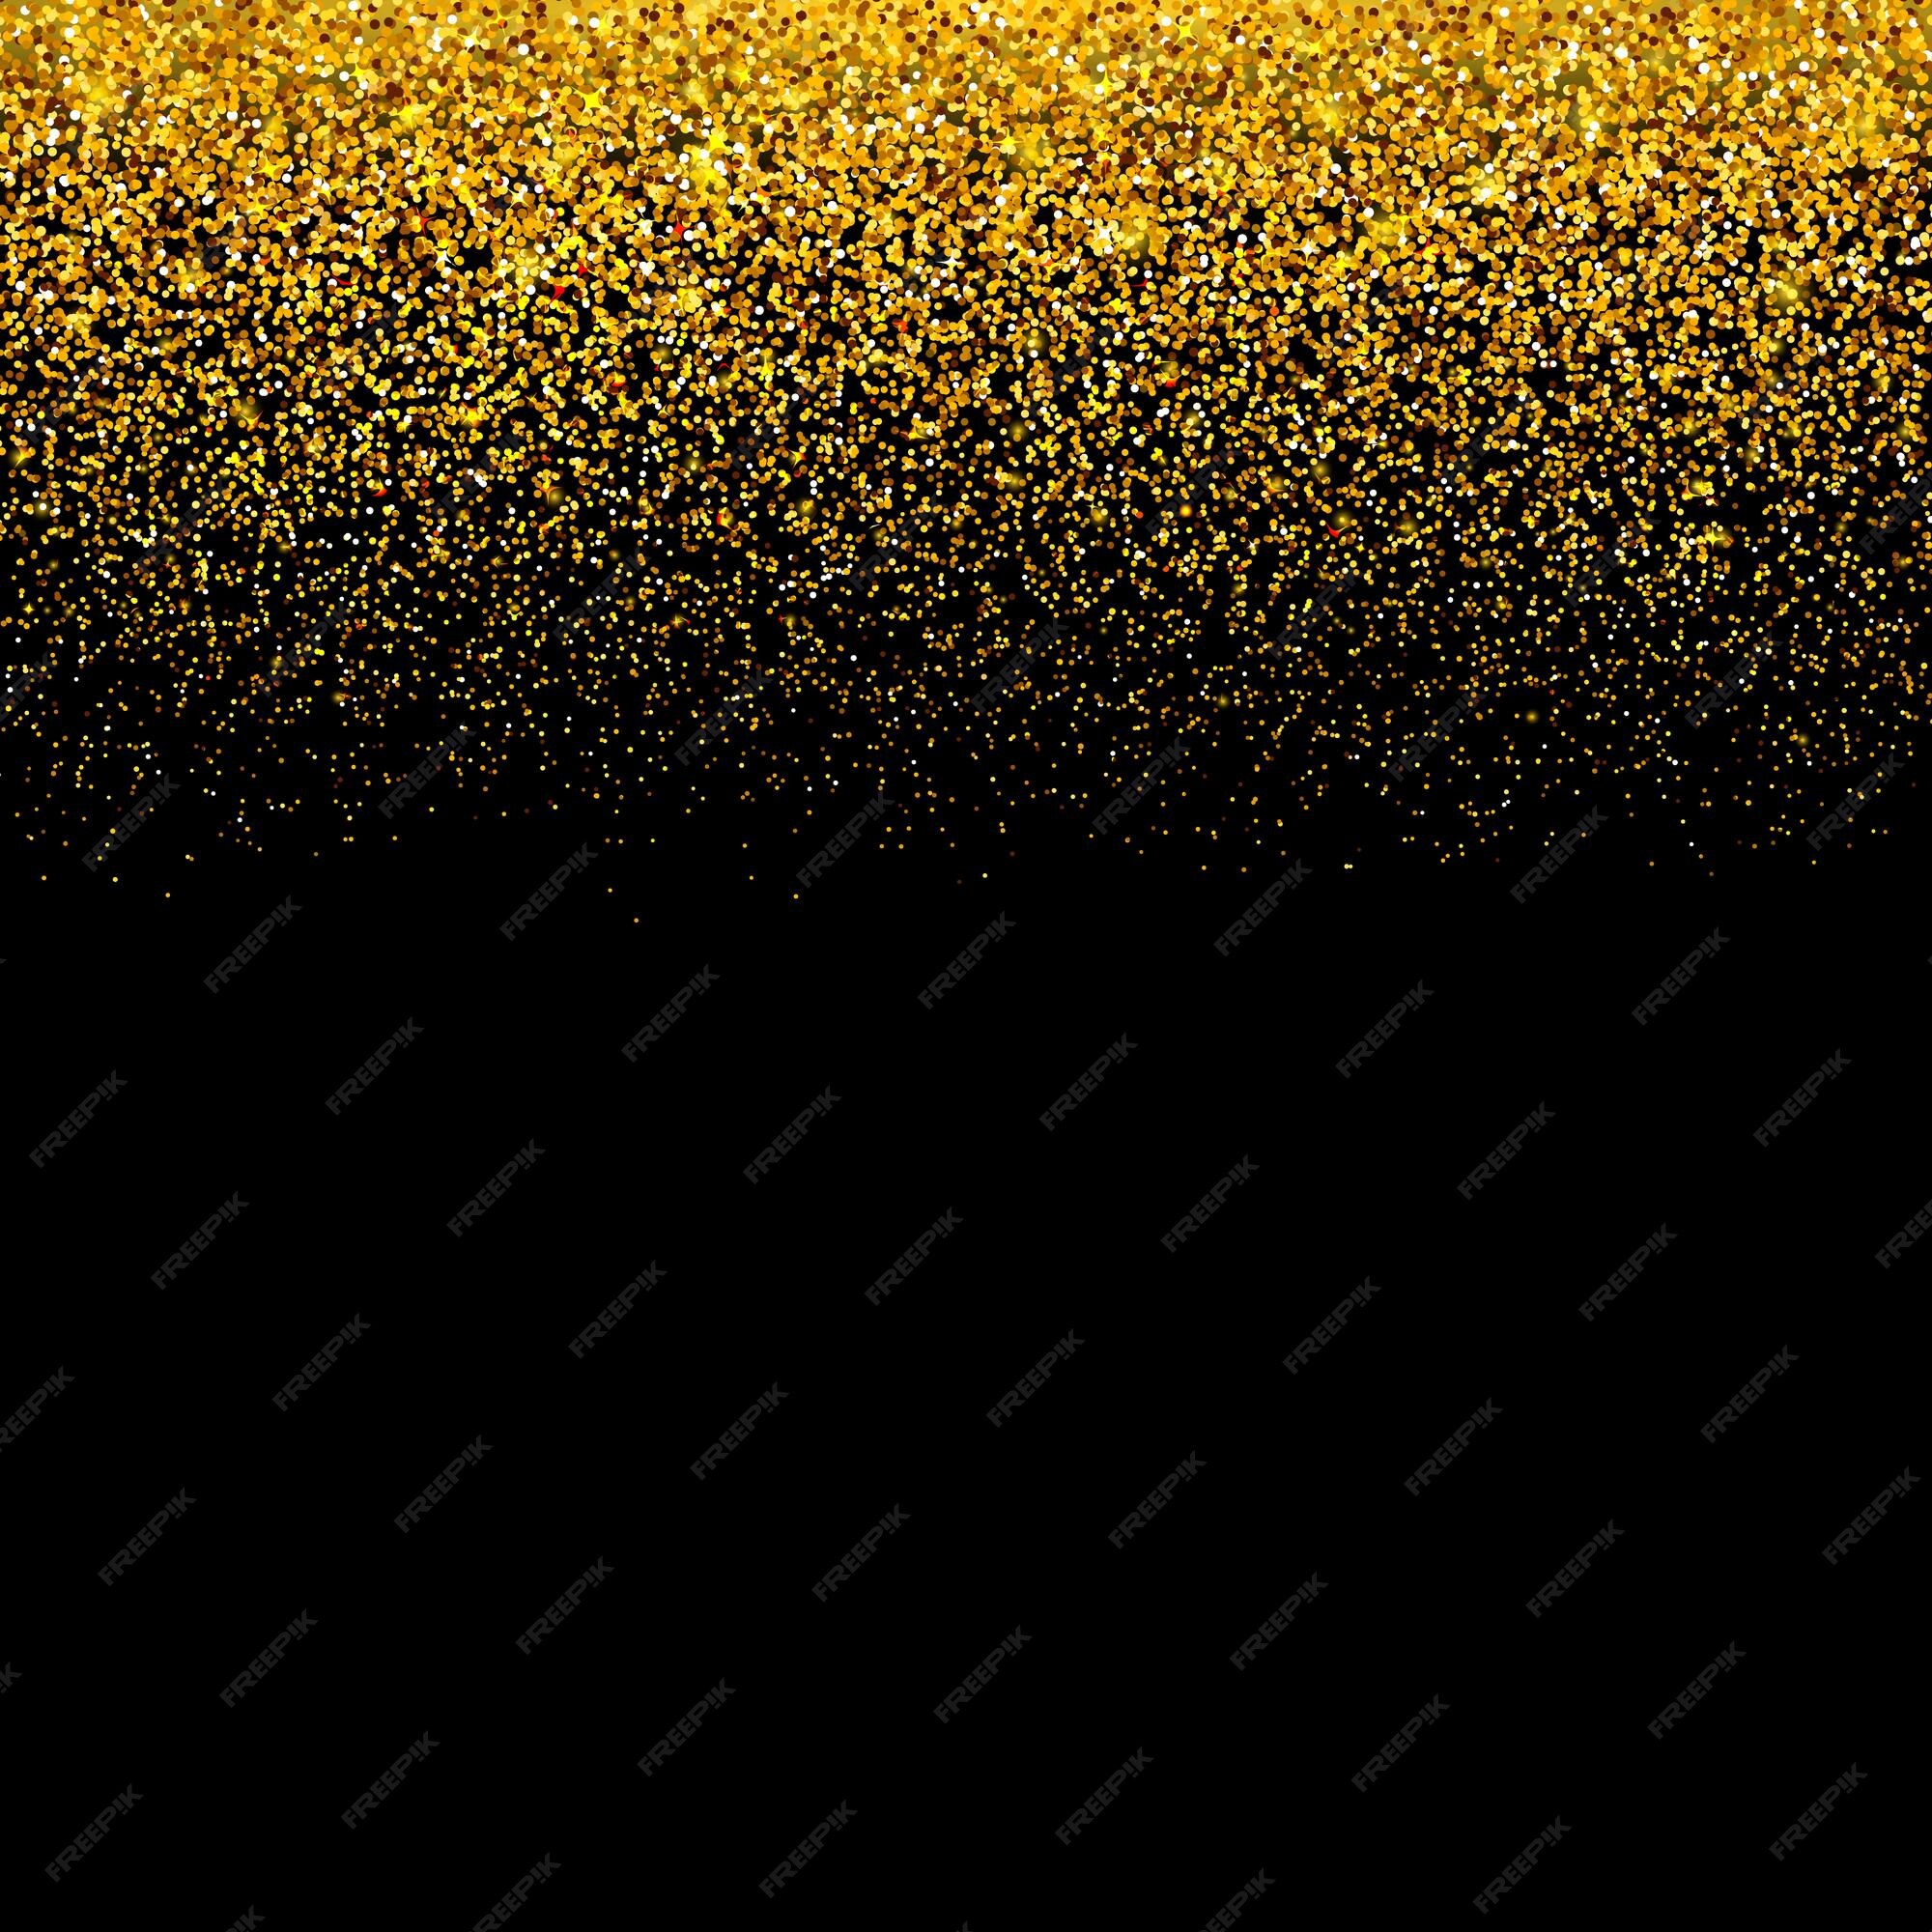 Nền đen tối được trang trí bằng hoa văn vàng rực rỡ, hãy tưởng tượng những thiệp sau đó được thực hiện như thế nào. Hãy cùng khám phá bức ảnh để tìm hiểu thêm về thiết kế đầy tinh tế của thiệp mời này.